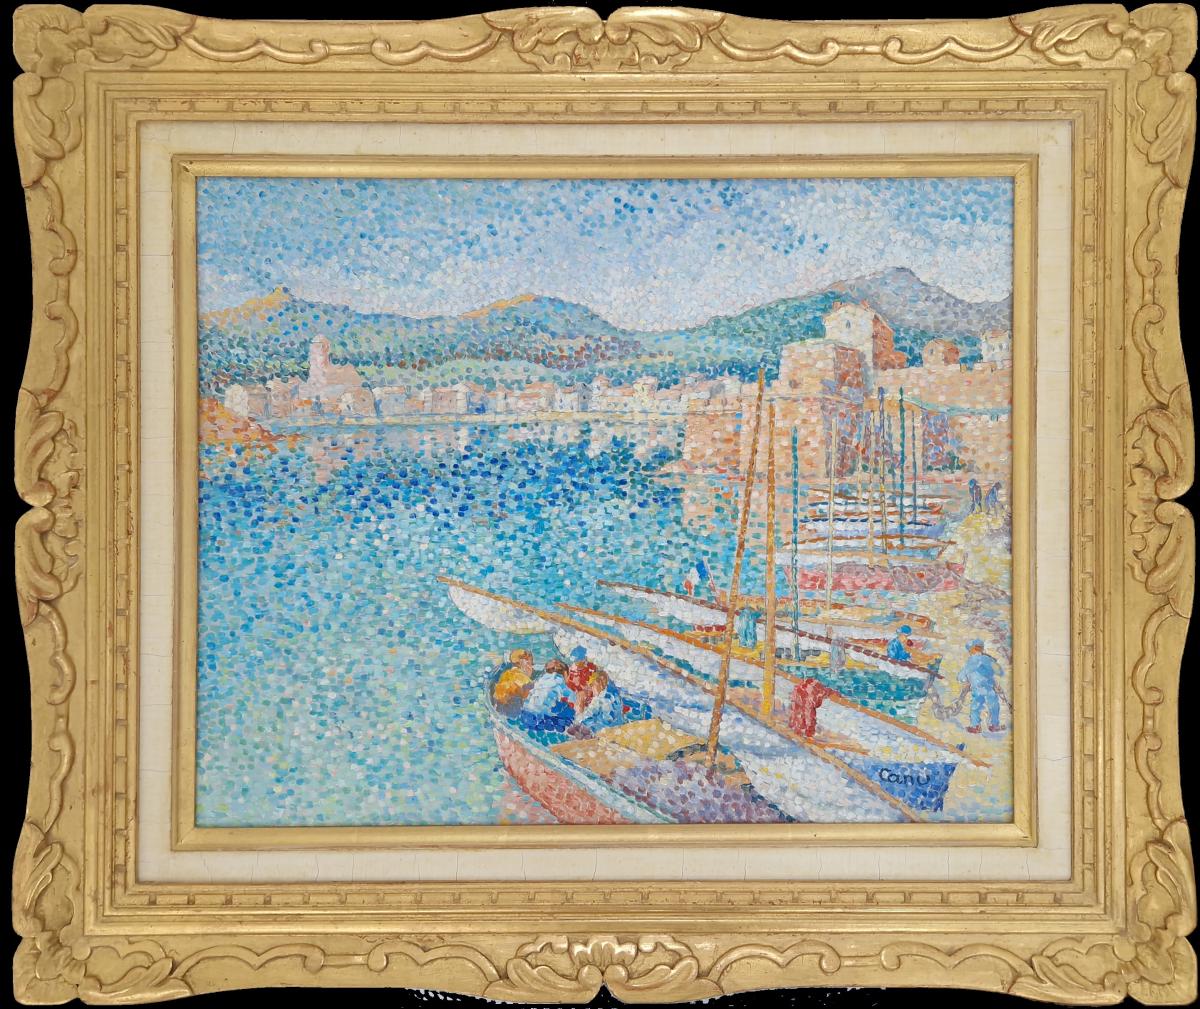 Le Port De Collioure by Yvonne Canu (1921-2008)